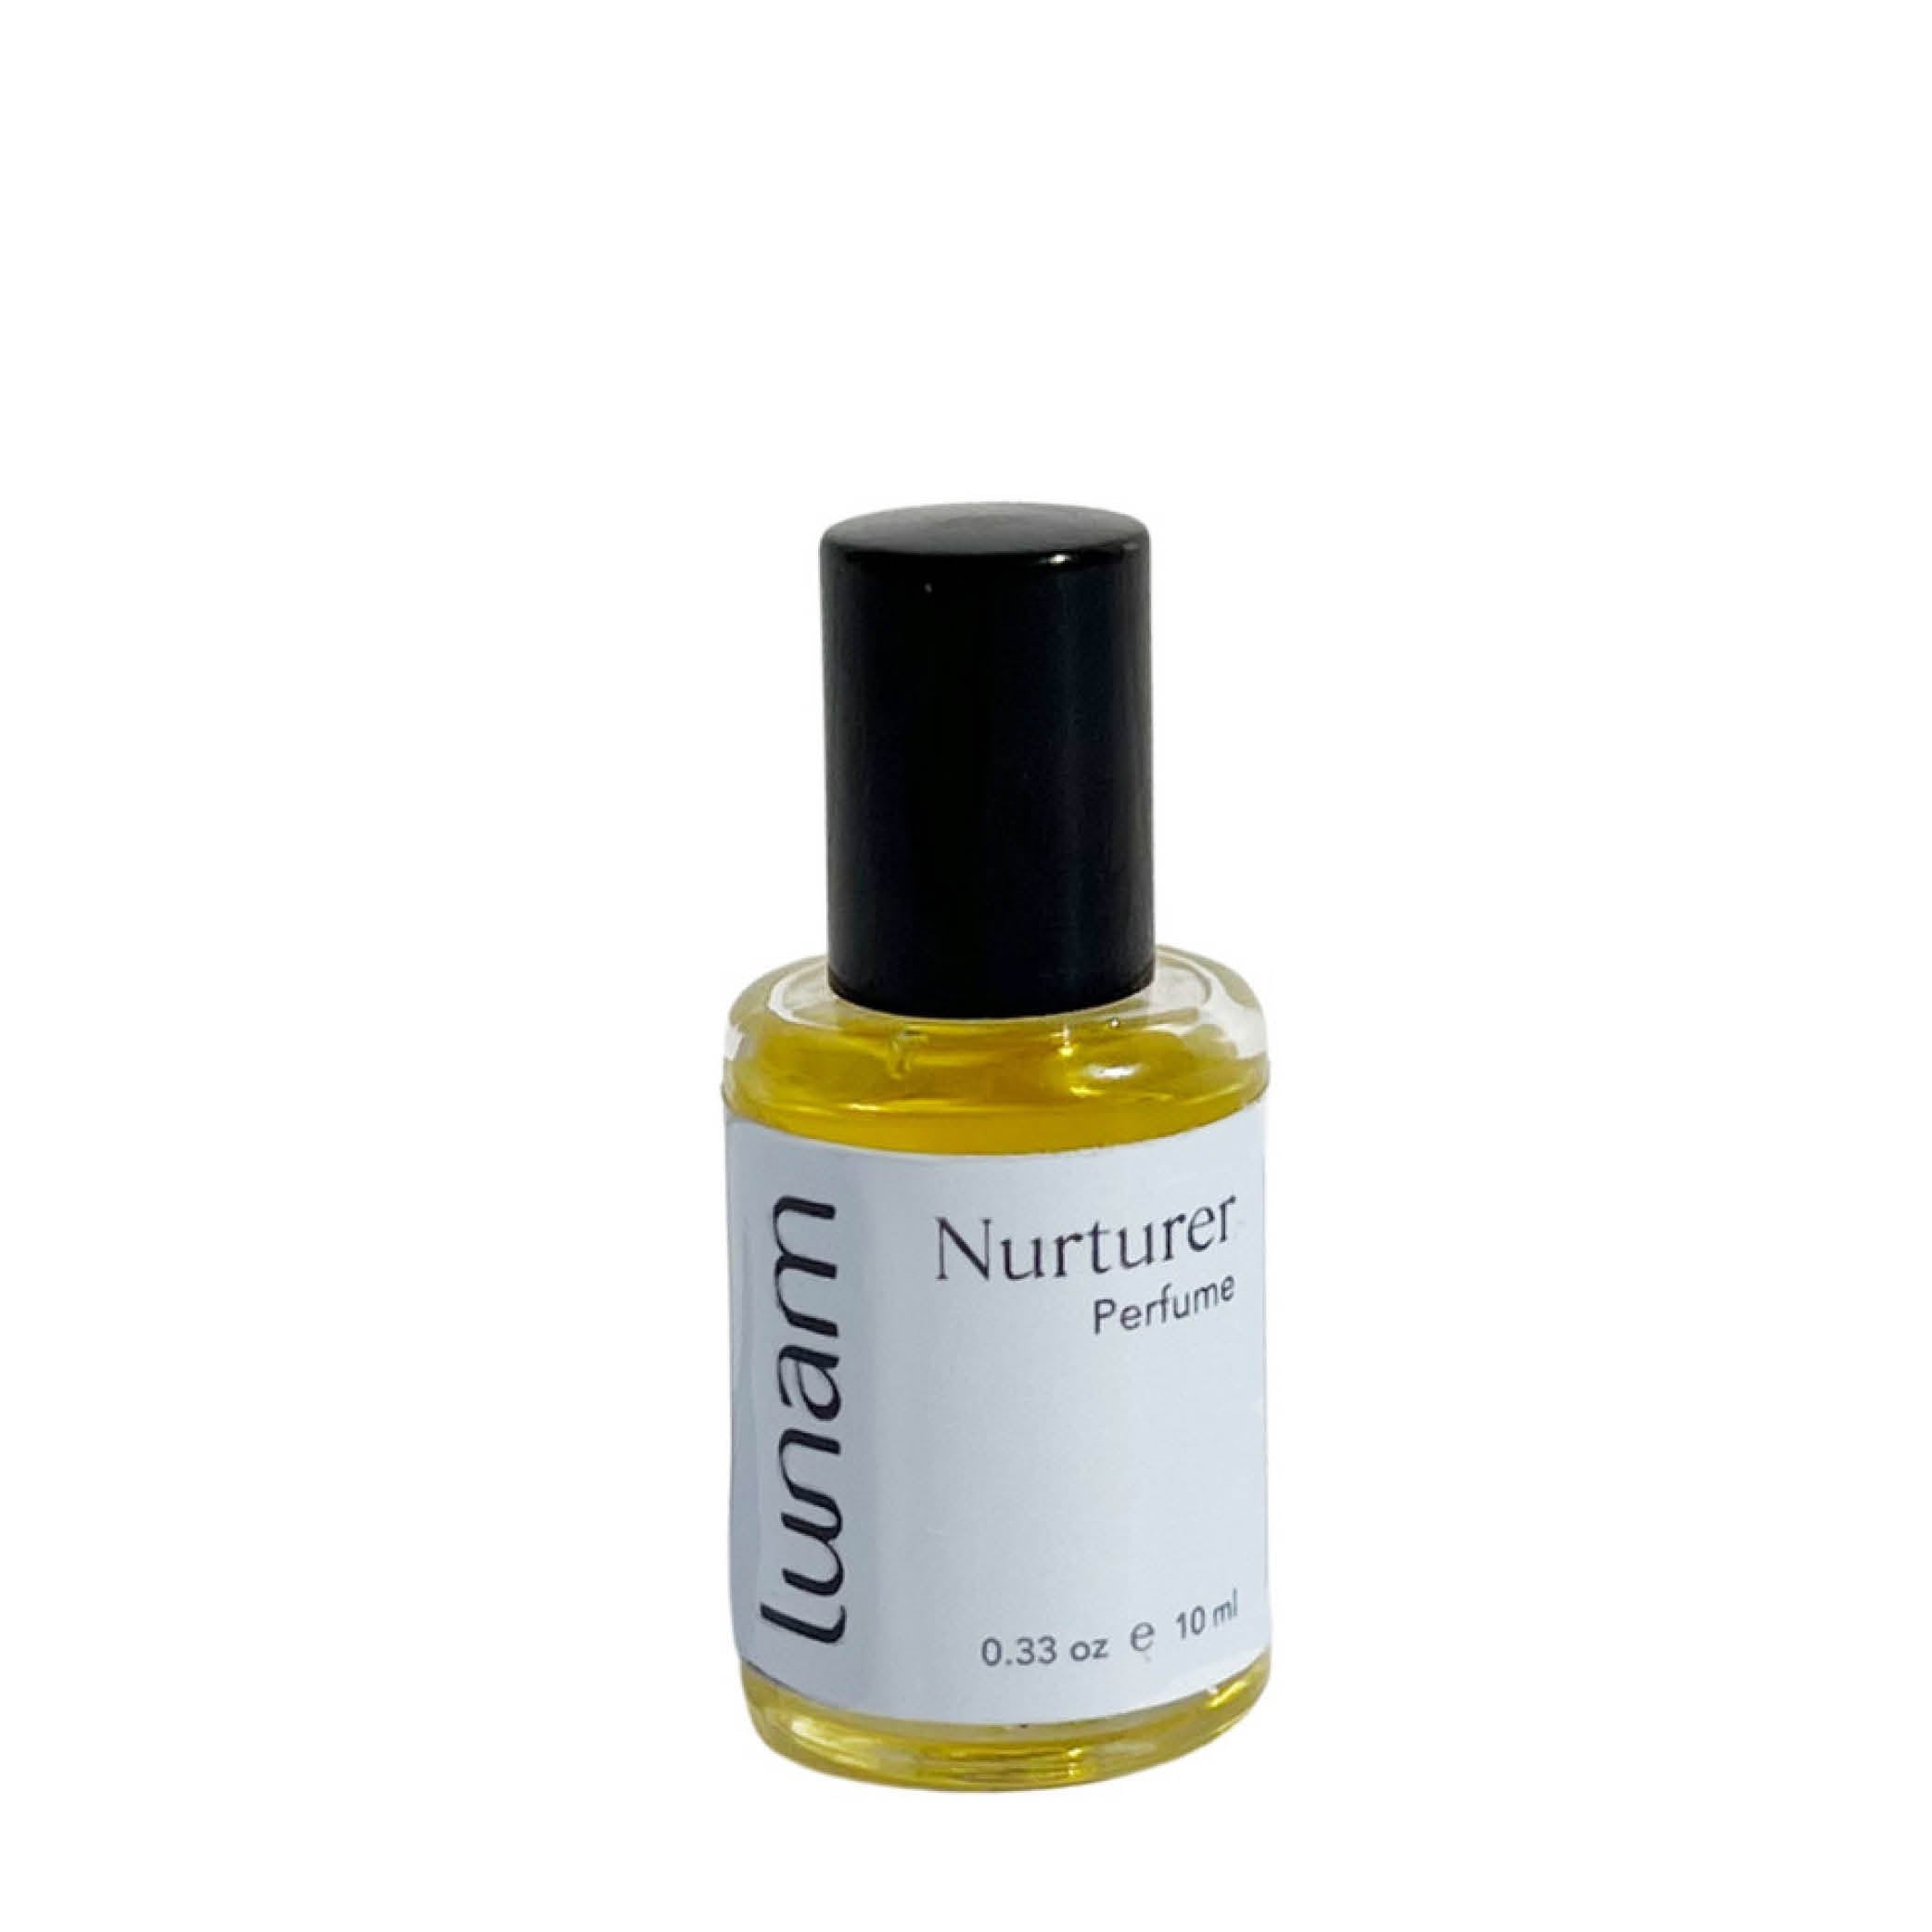 Nurturer Perfume Oil